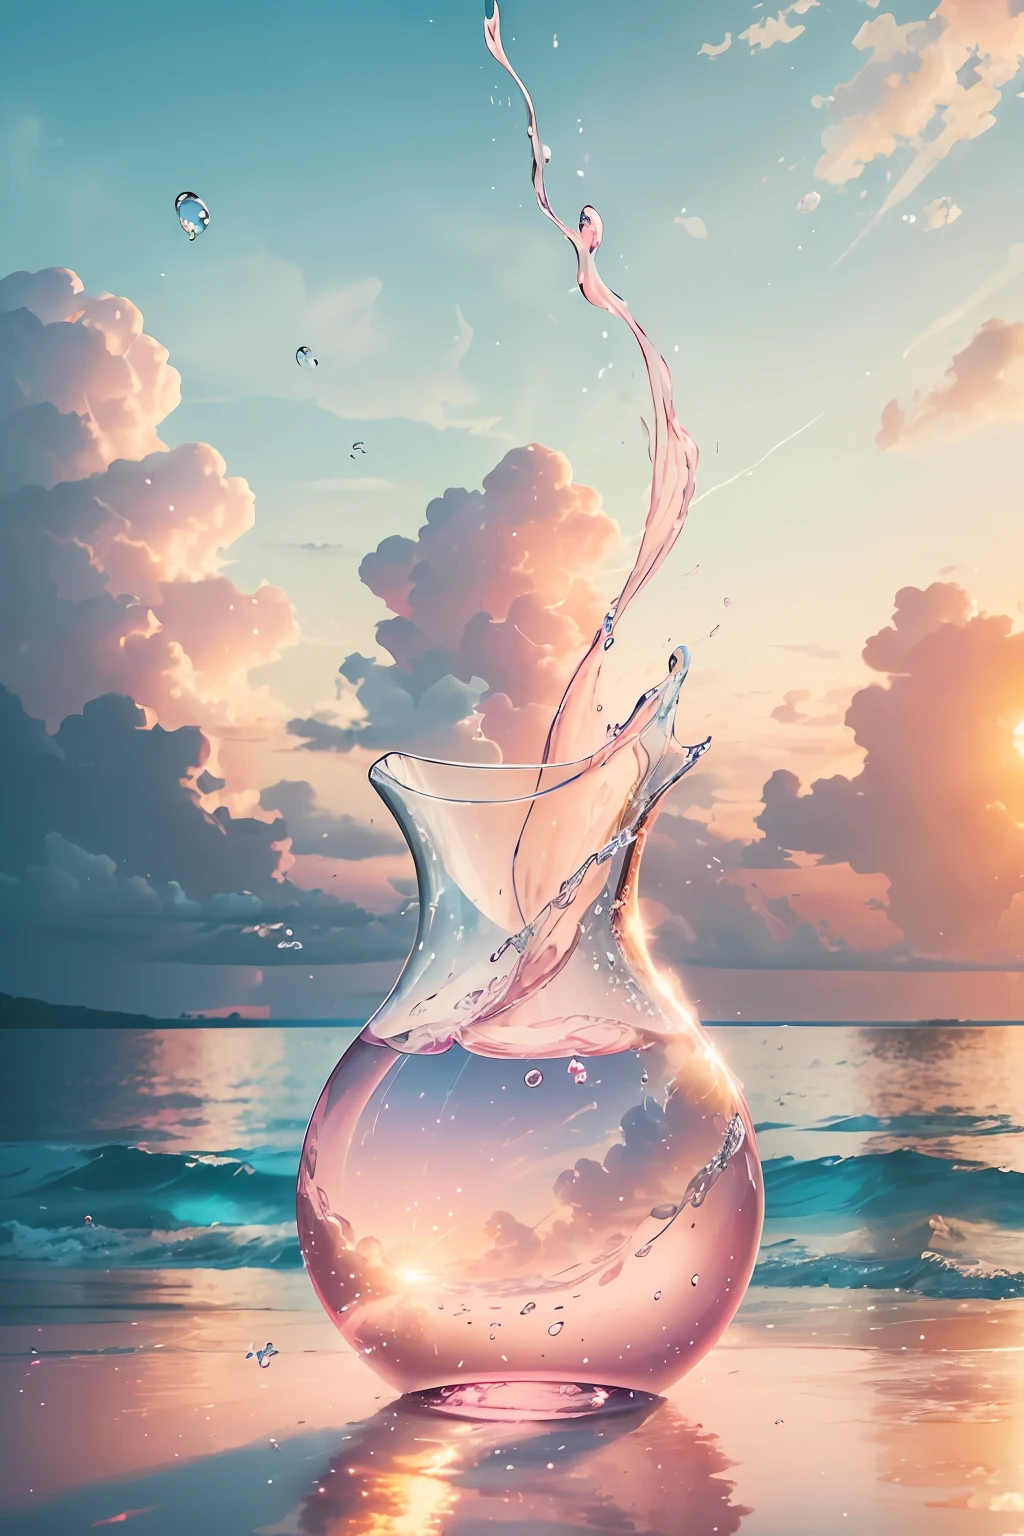 Erstellen Sie ein 4K 9:16 Bild, das einen atemberaubenden Sonnenaufgang an einem tropischen Strand zeigt, mit sanften Wellen und Palmen entlang der Küste. Die Farbpalette sollte lebendig sein und ein Gefühl der Erneuerung und positiven Energie vermitteln.  Stellen Sie sich eine Vase aus klarem Glas vor, die mit einer zartrosa Wolke gefüllt ist. Die Wolke besteht aus winzigen Bläschen, jedes reflektiert einen Lichtfunken. Man sieht, dass sich die Blasen ständig bewegen, Verschieben und Wirbeln in der Vase. Aber trotz ihrer Vergänglichkeit, Sie hinterlassen einen bleibenden Eindruck auf der Vase selbst. Wenn das Licht durch die rosa Wolke dringt, Es wirft einen sanften Schein auf das Glas, sein Wesen zu verändern. Genau wie die Seifenblasen, Momente der Freude können flüchtig und vorübergehend sein, aber der Eindruck, den sie auf deiner Seele hinterlassen, ist wie die zartrosa Wolke, dein ganzes Wesen zu erleuchten und dich für immer zu verändern.